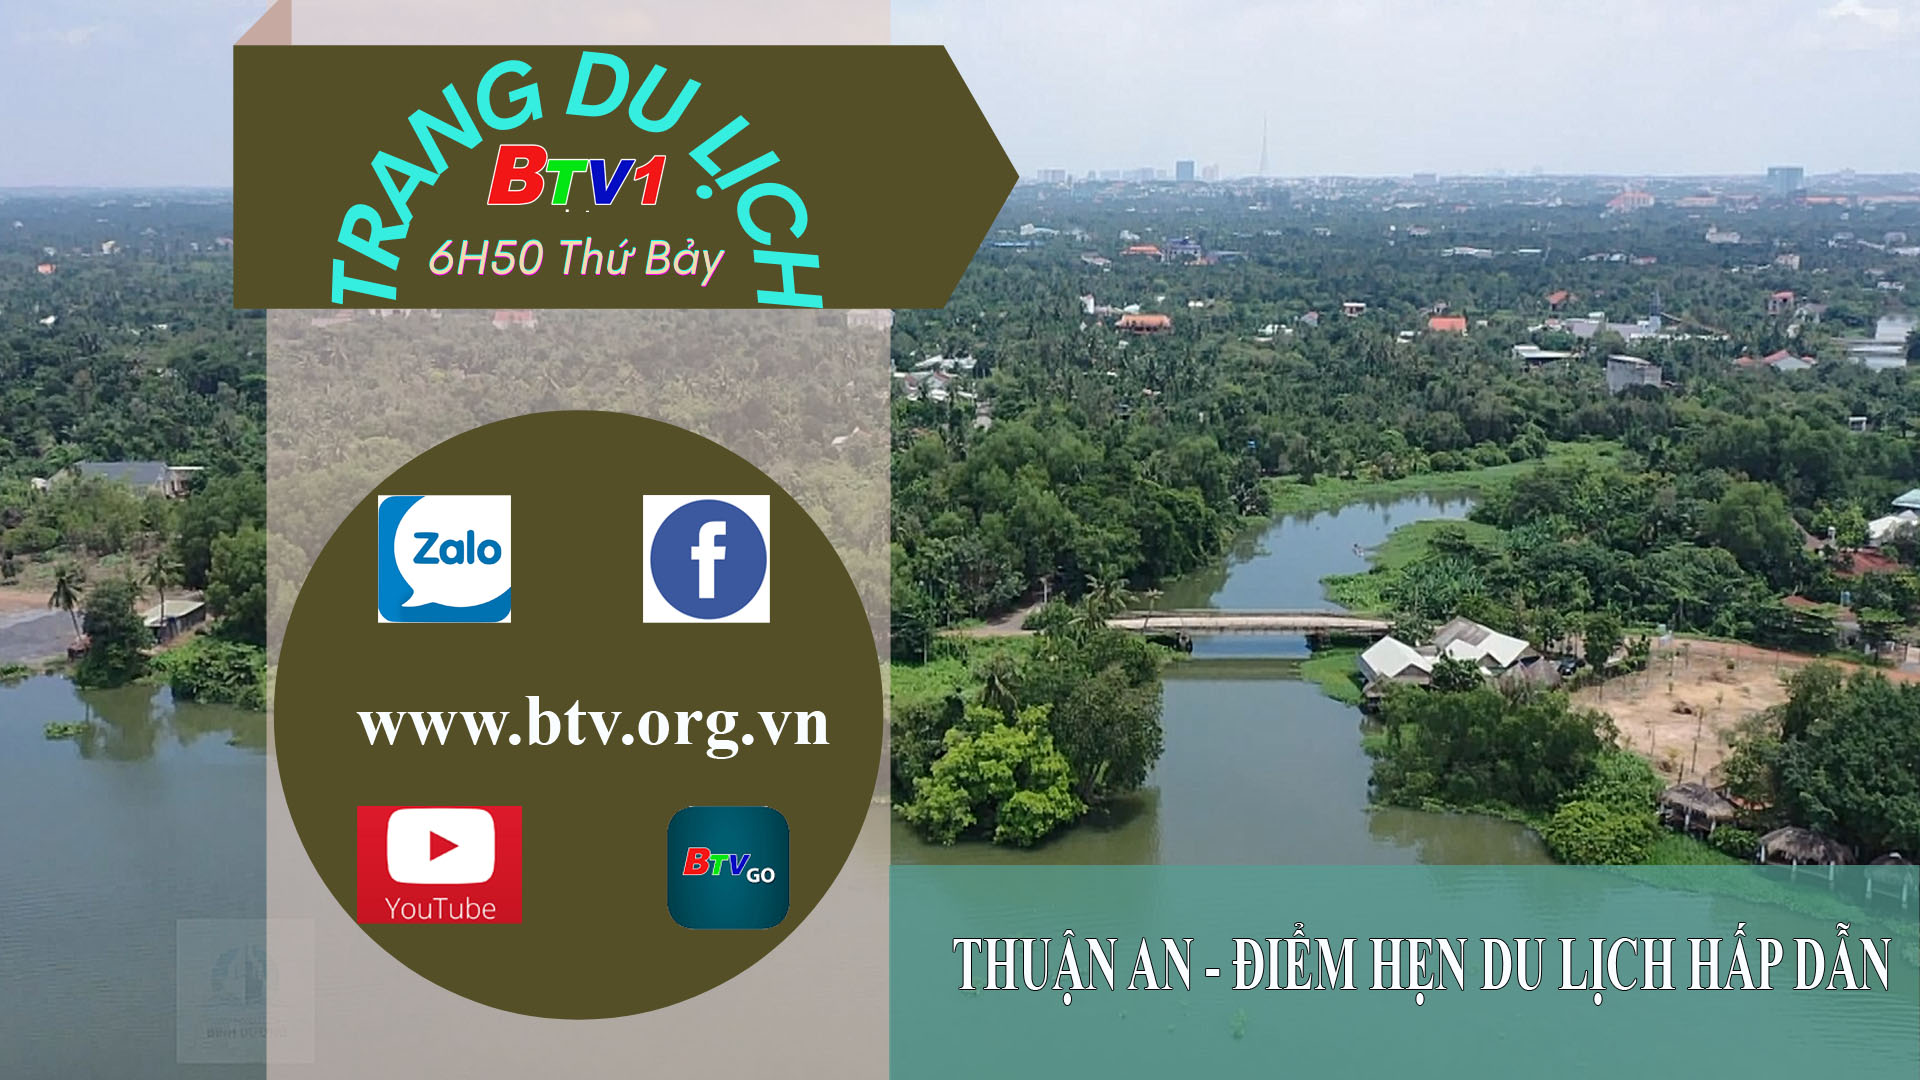 Thuận An - Điểm hẹn du lịch hấp dẫn